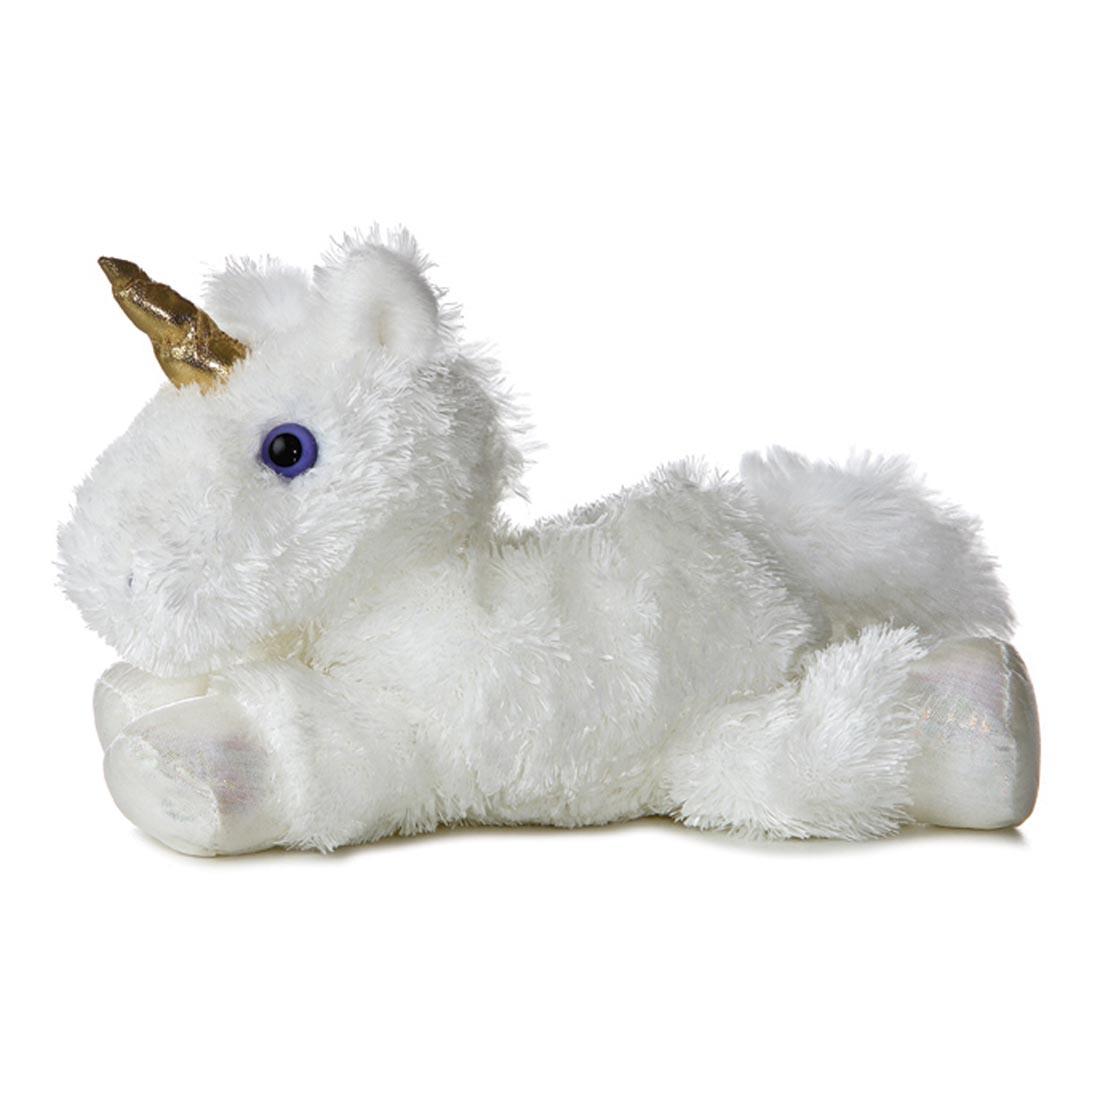 soft stuffed white unicorn